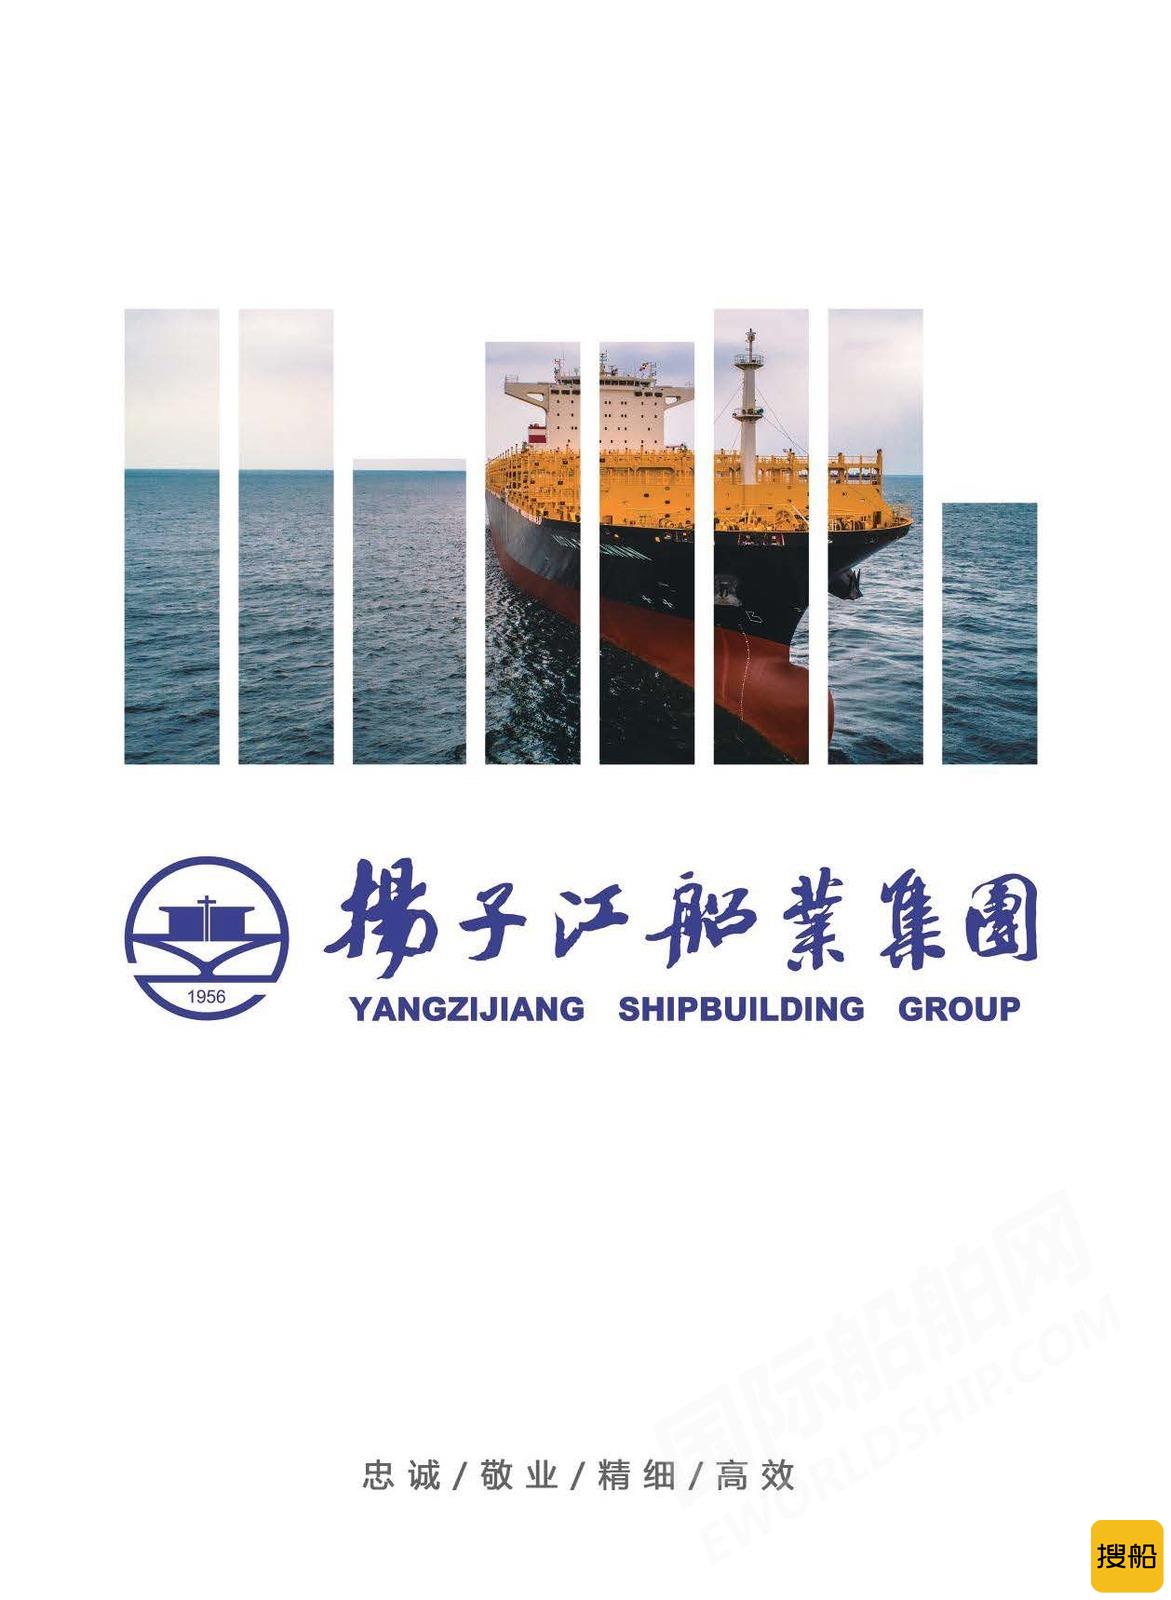 中国船企11月揽获全球近70%新船订单